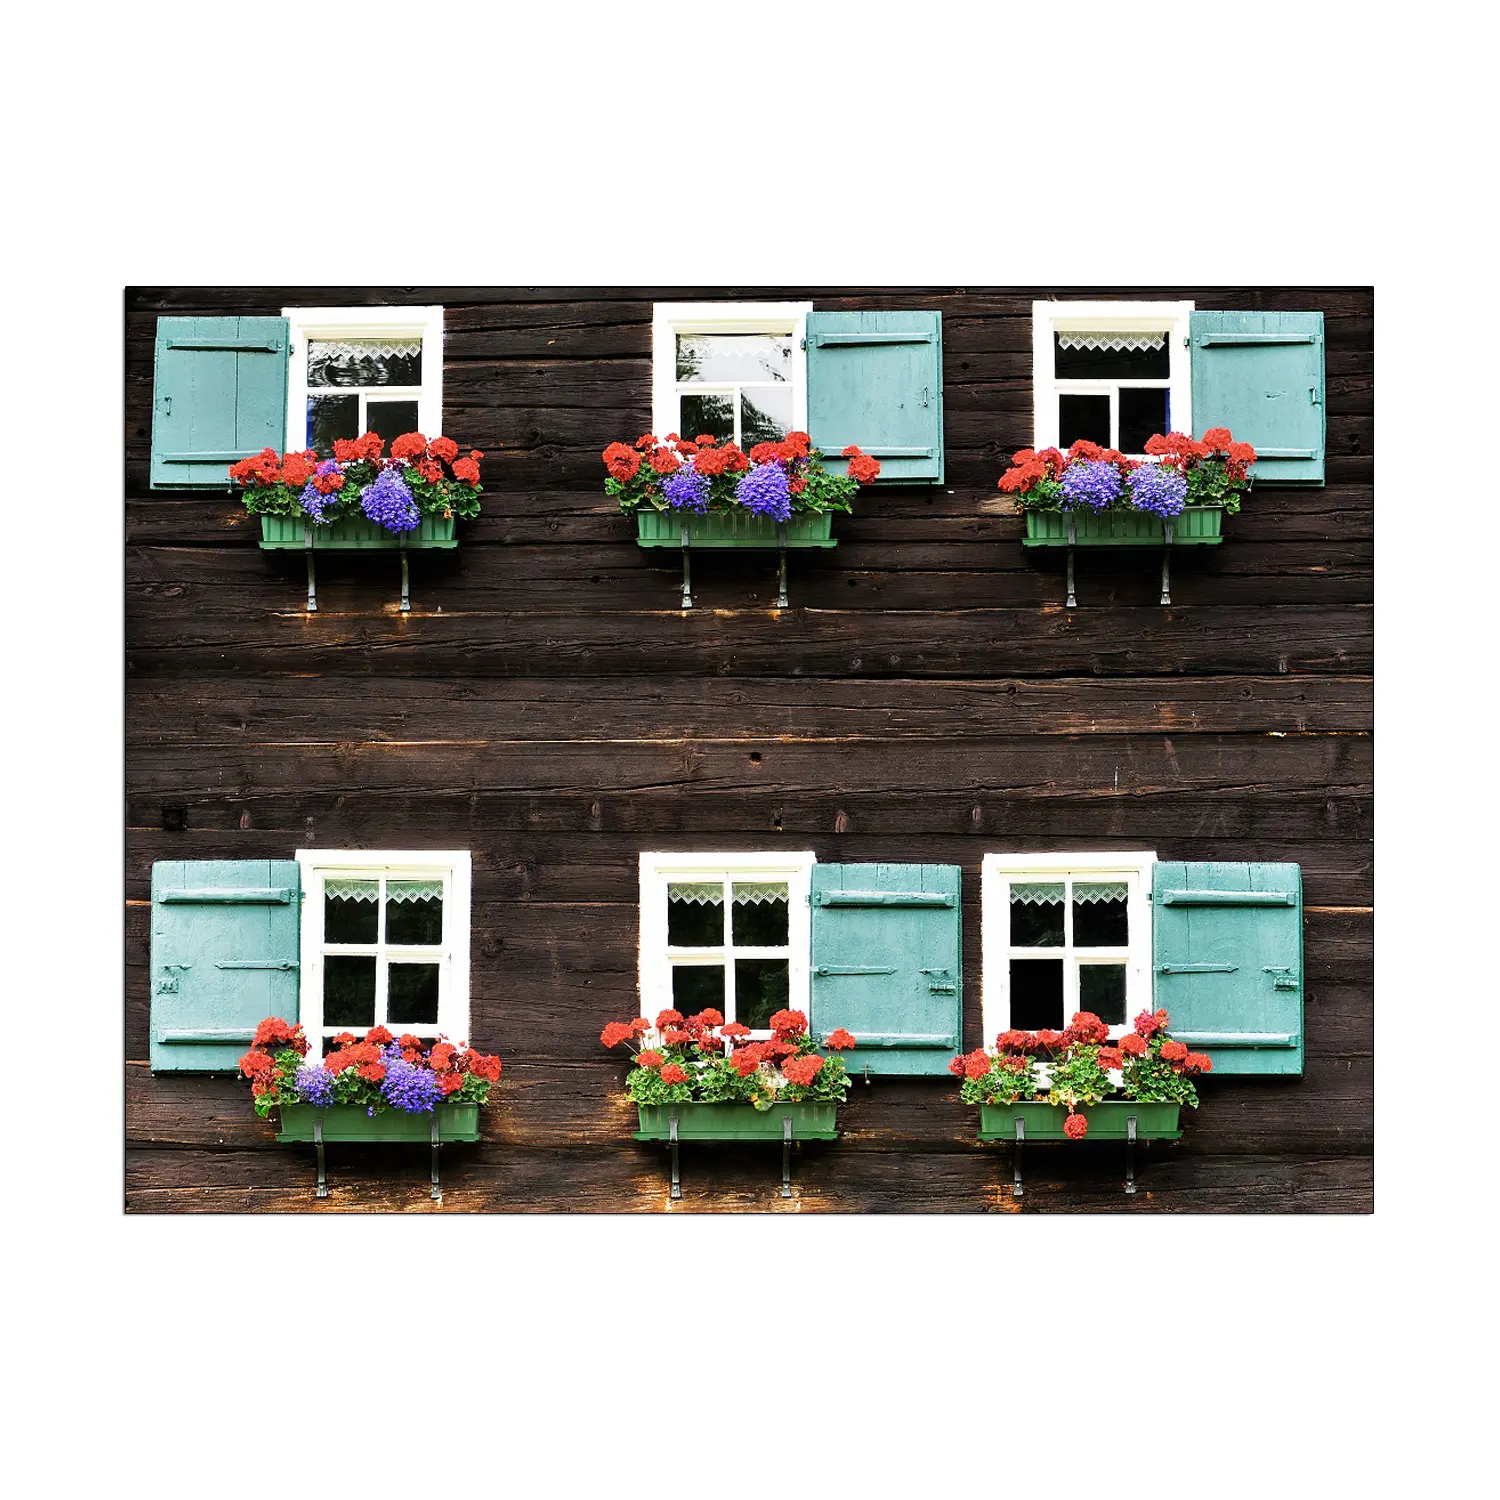 나무 집 캔버스에 작은 꽃 발코니가있는 6 개의 시안 색과 흰색 창문 인쇄 된 그림 홈 장식 벽 예술 그림